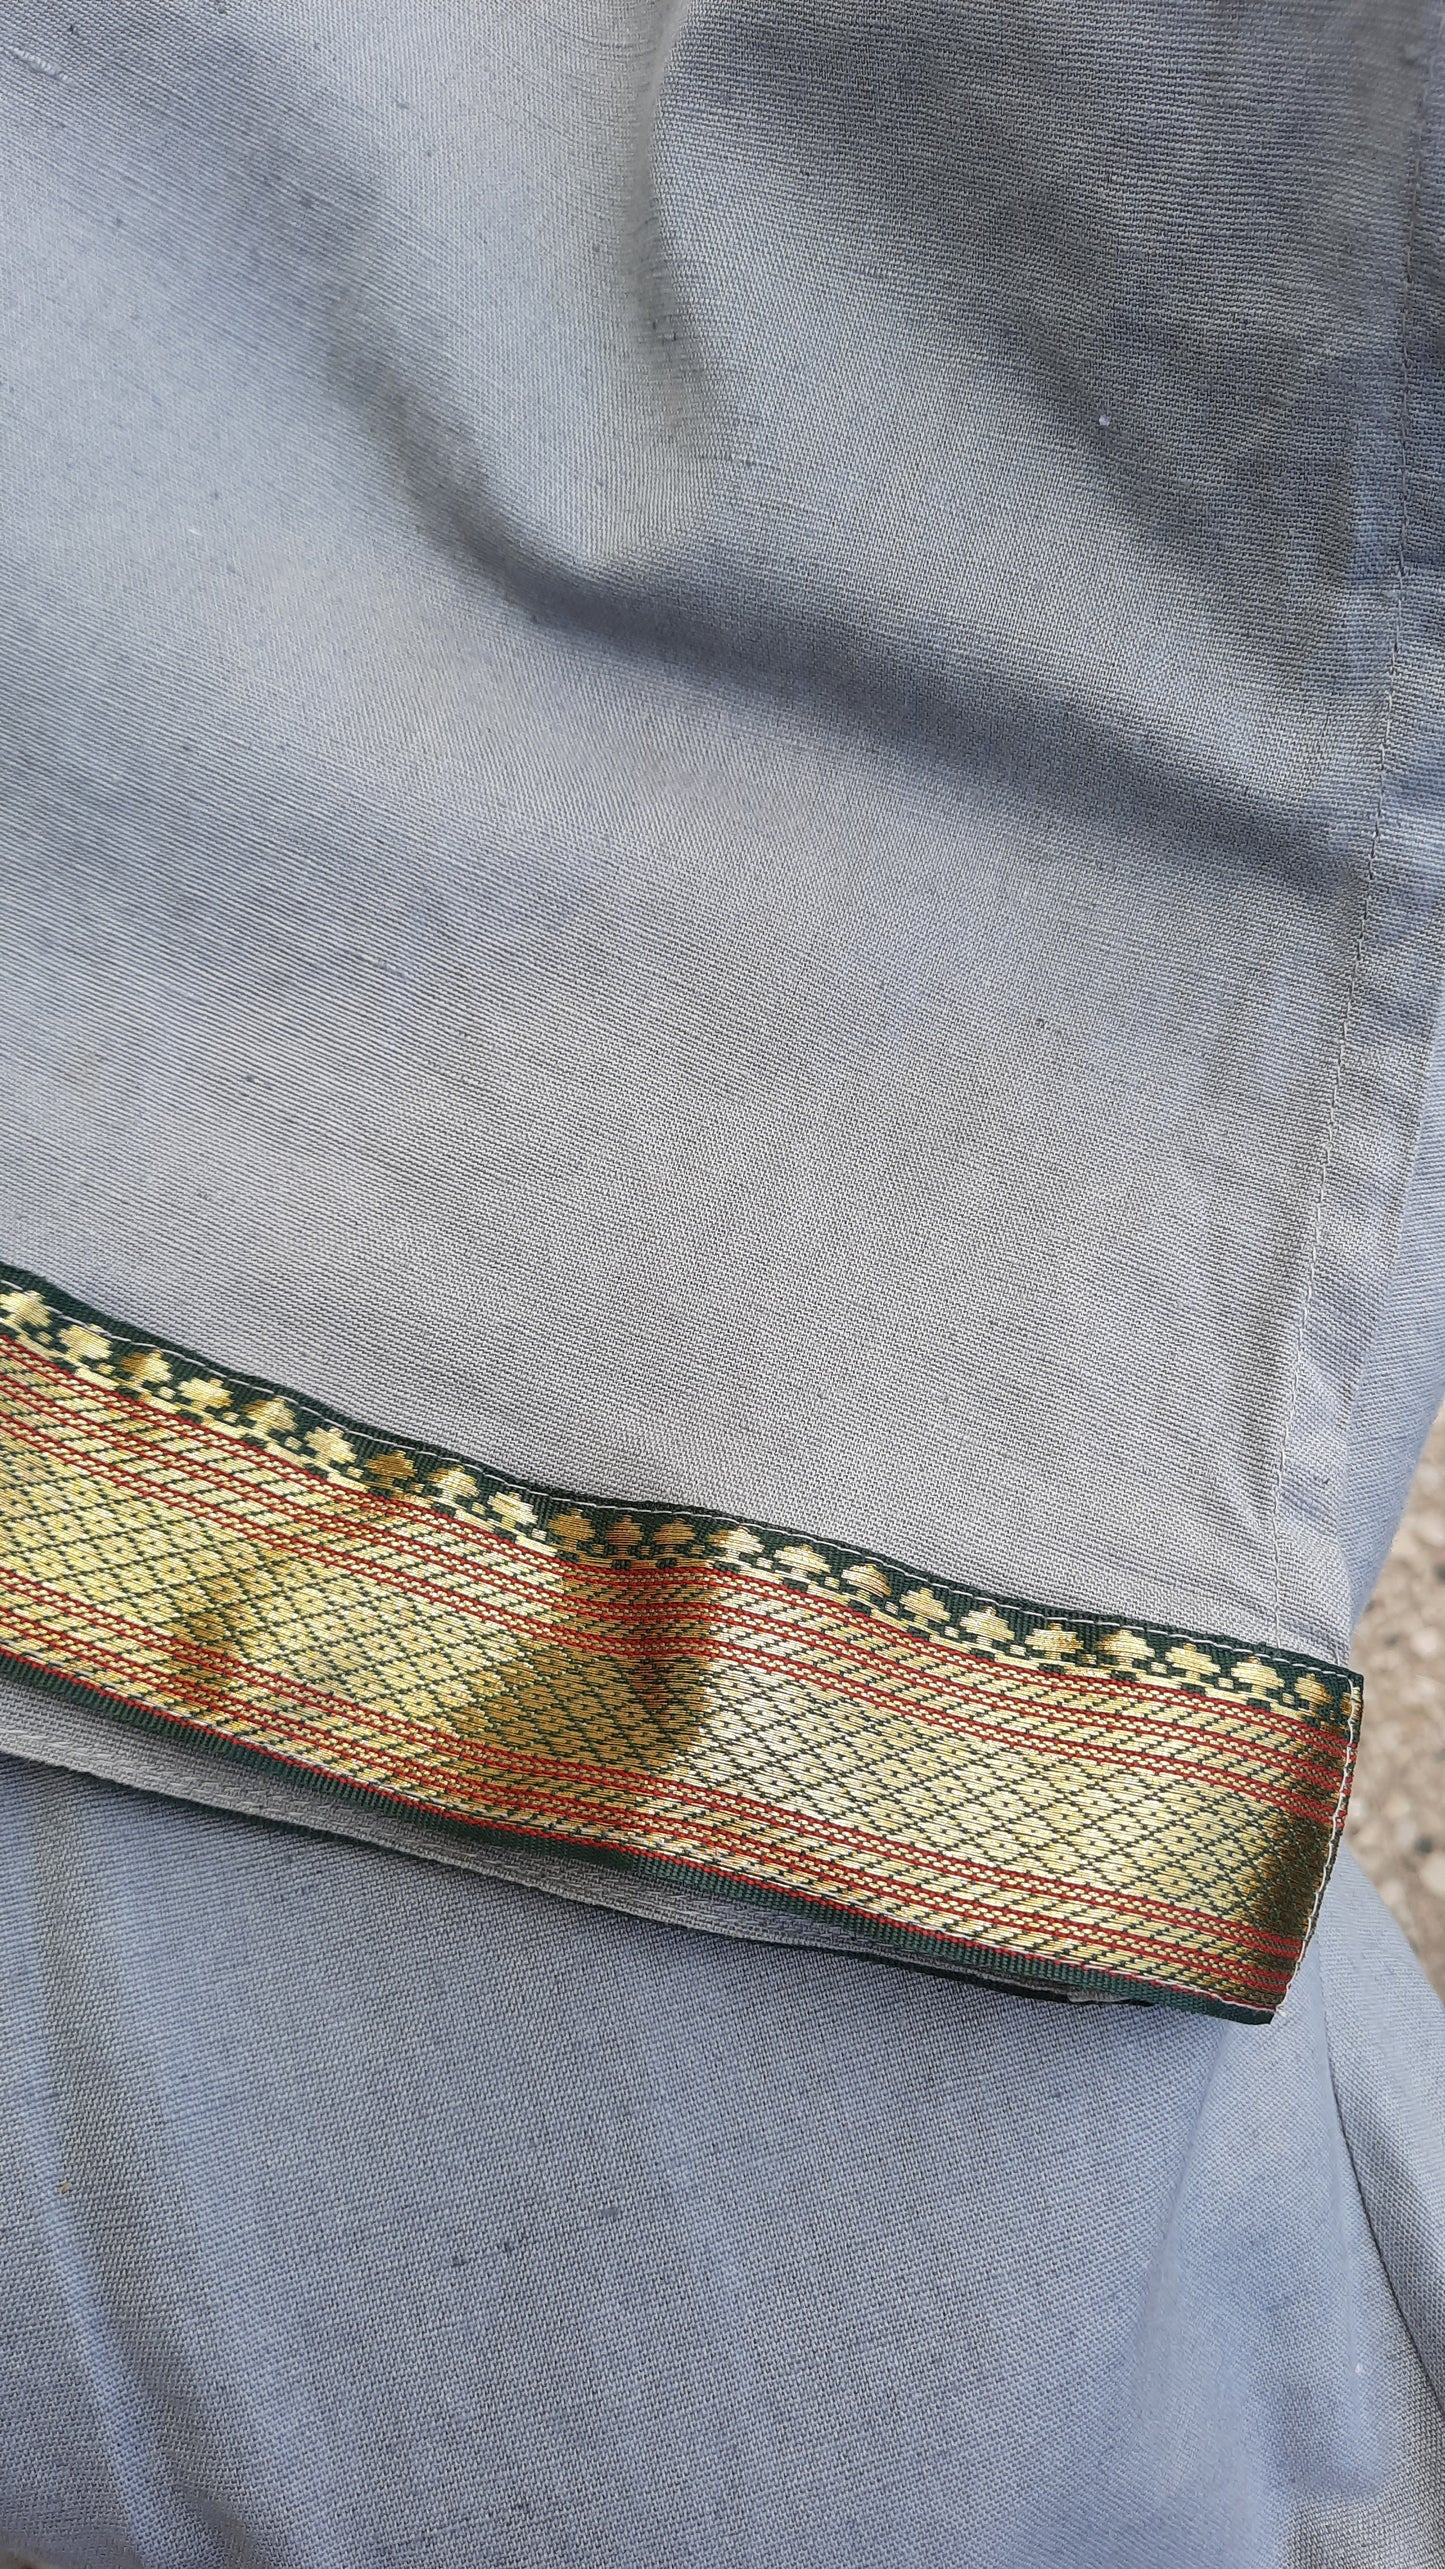 Vintage Indian Collarless Shirt Tunic